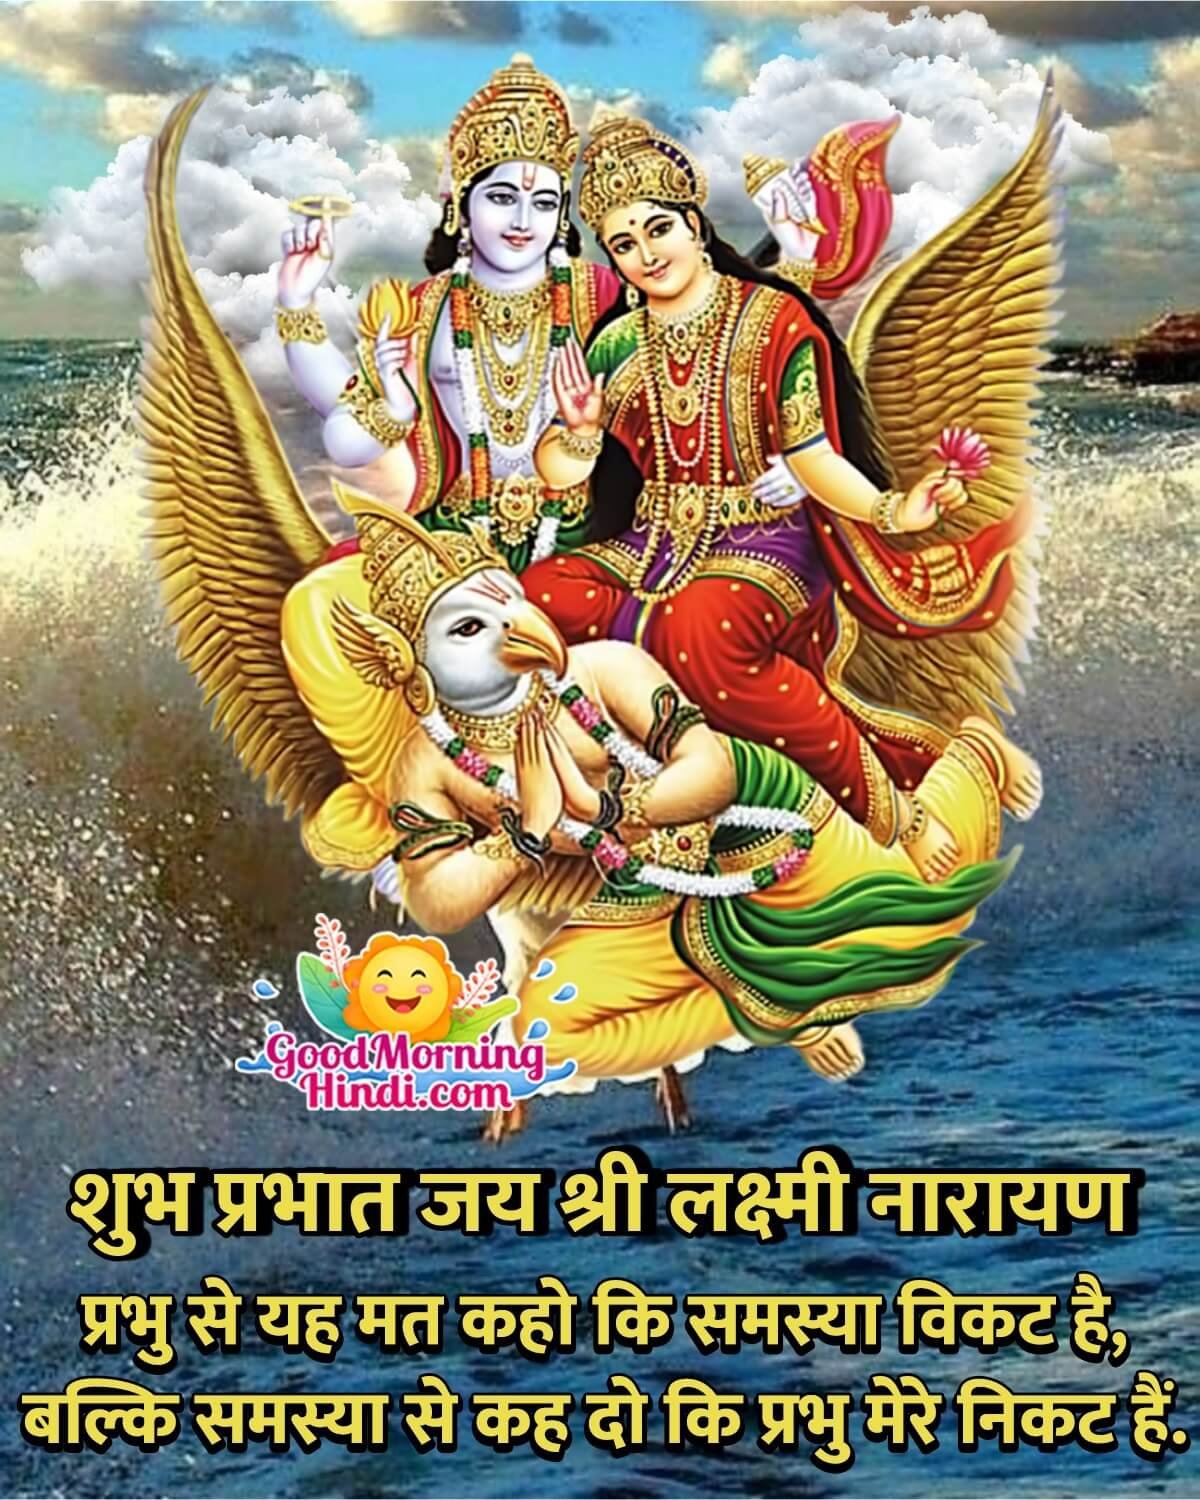 Good Morning Shri Vishnu Images In Hindi - Good Morning Wishes & Images In  Hindi